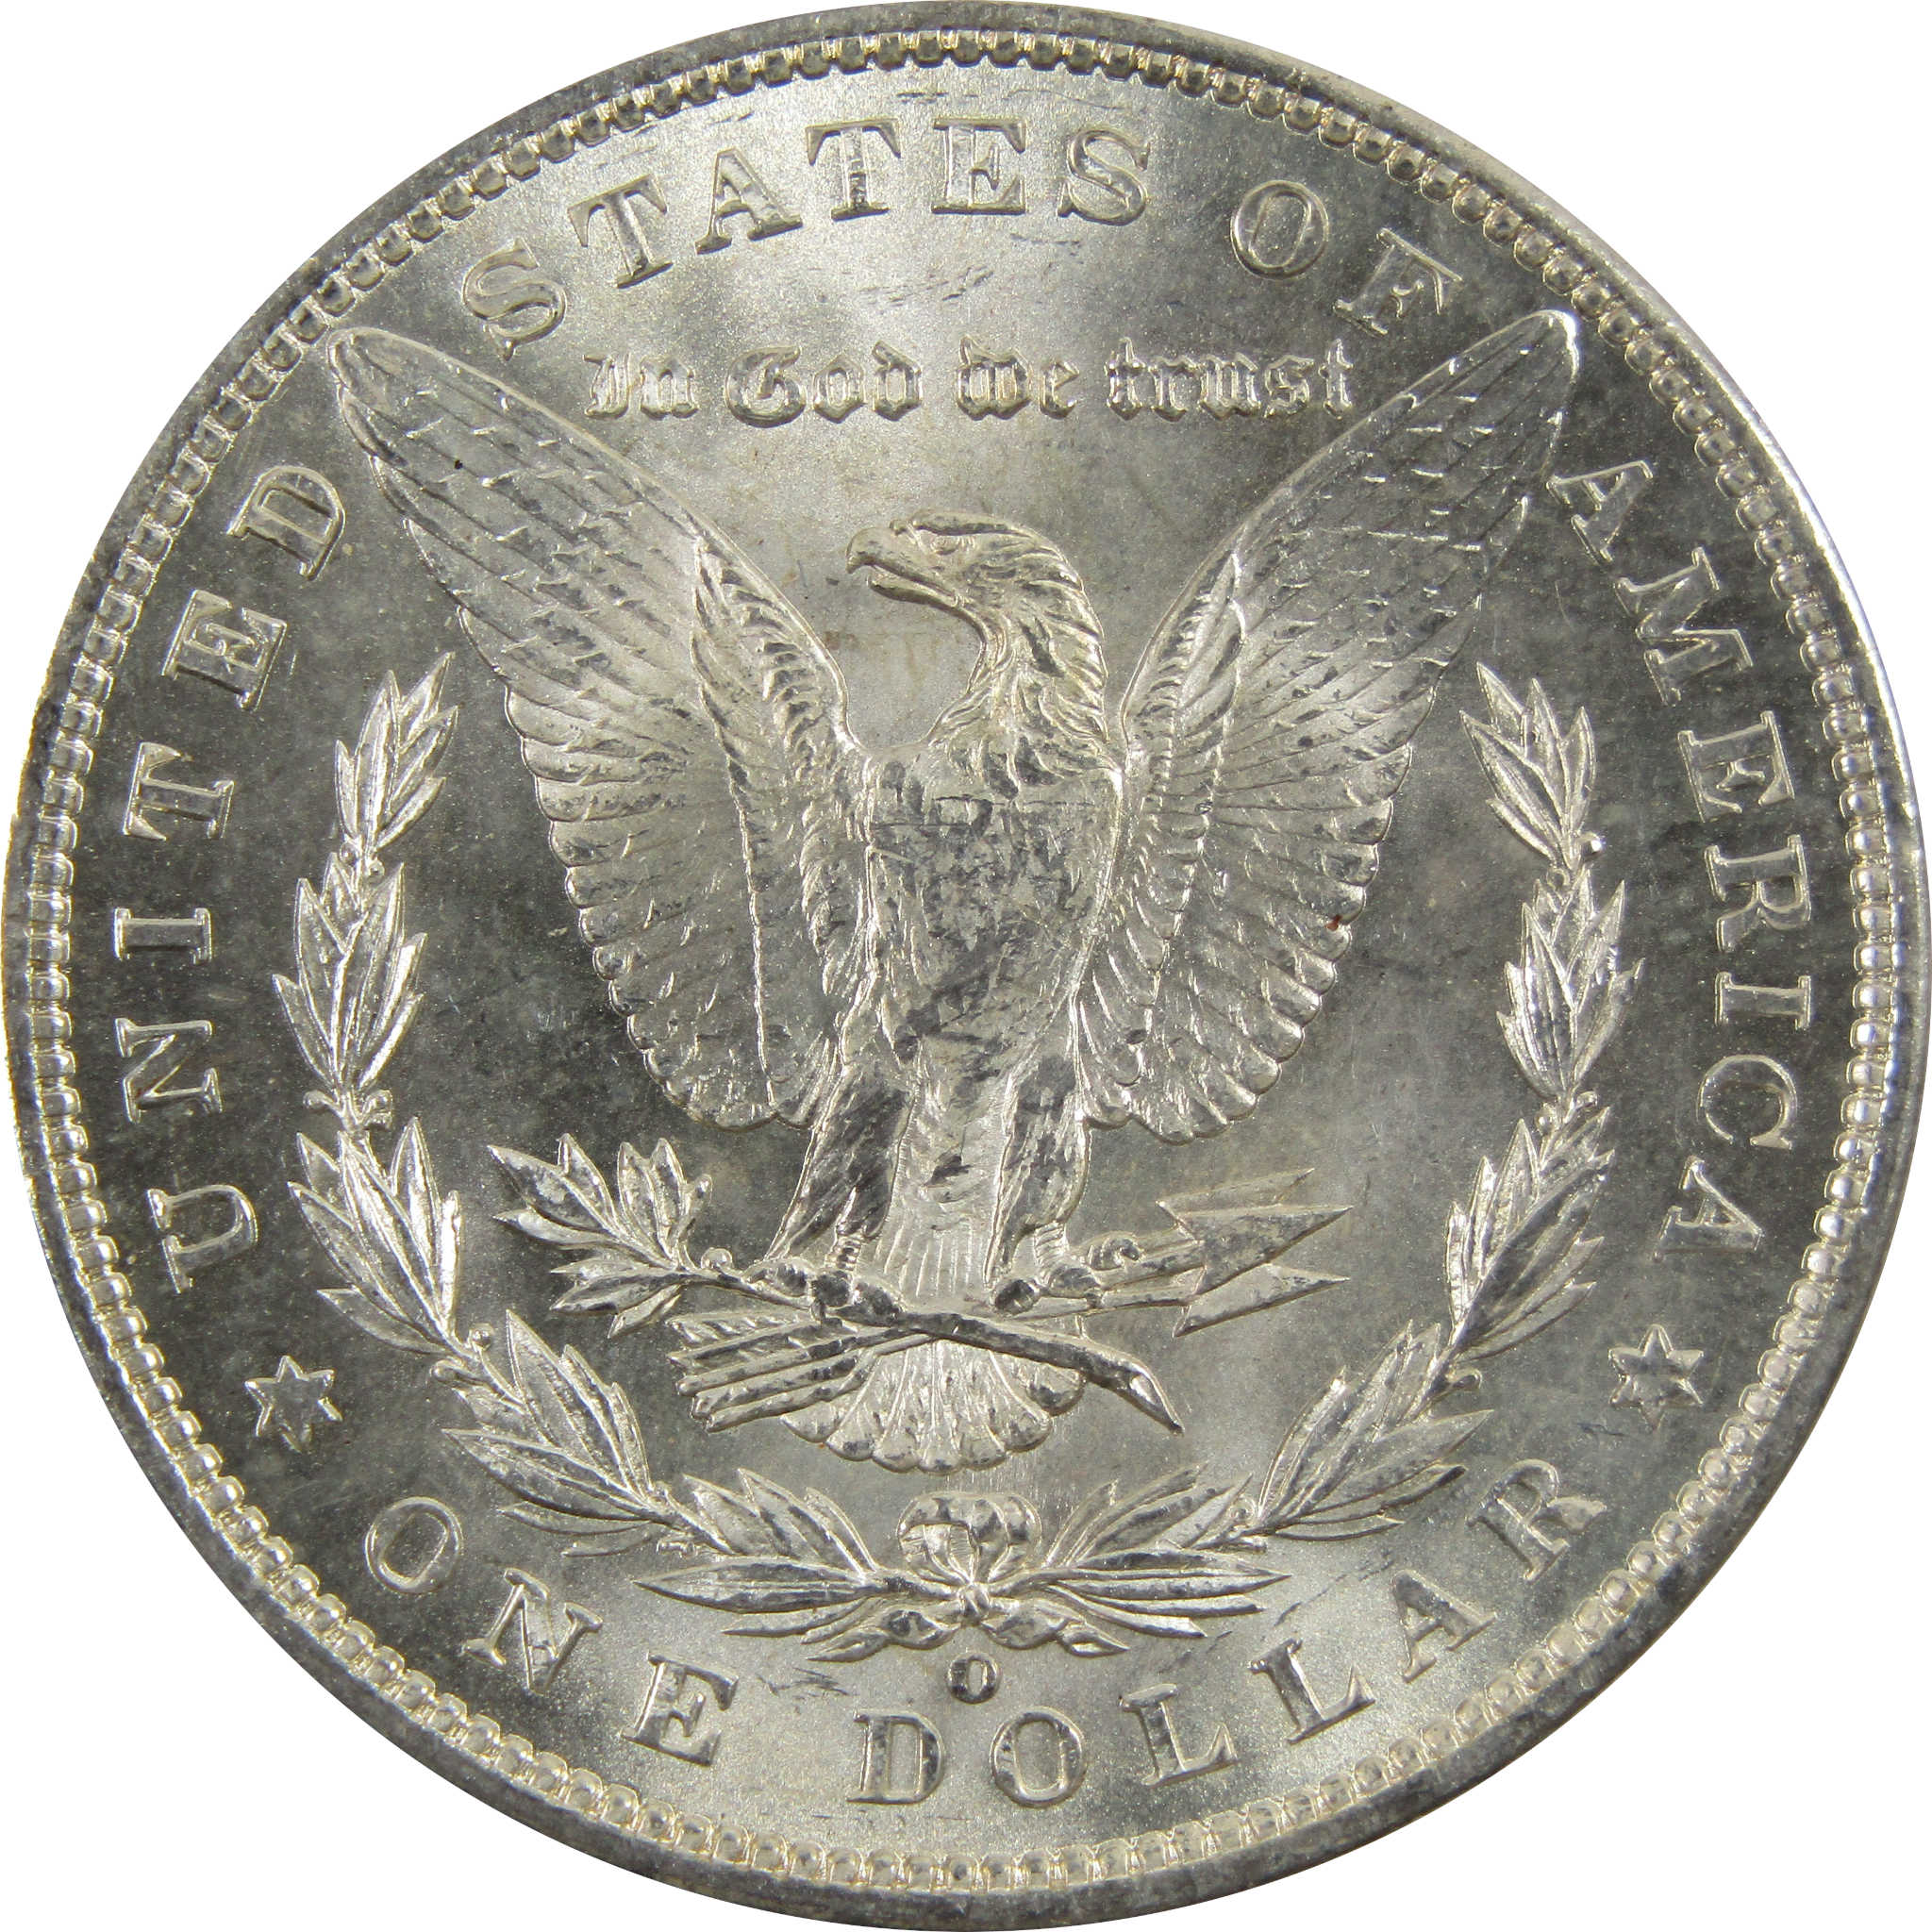 1898 O Morgan Dollar BU Uncirculated 90% Silver $1 Coin SKU:I5259 - Morgan coin - Morgan silver dollar - Morgan silver dollar for sale - Profile Coins &amp; Collectibles